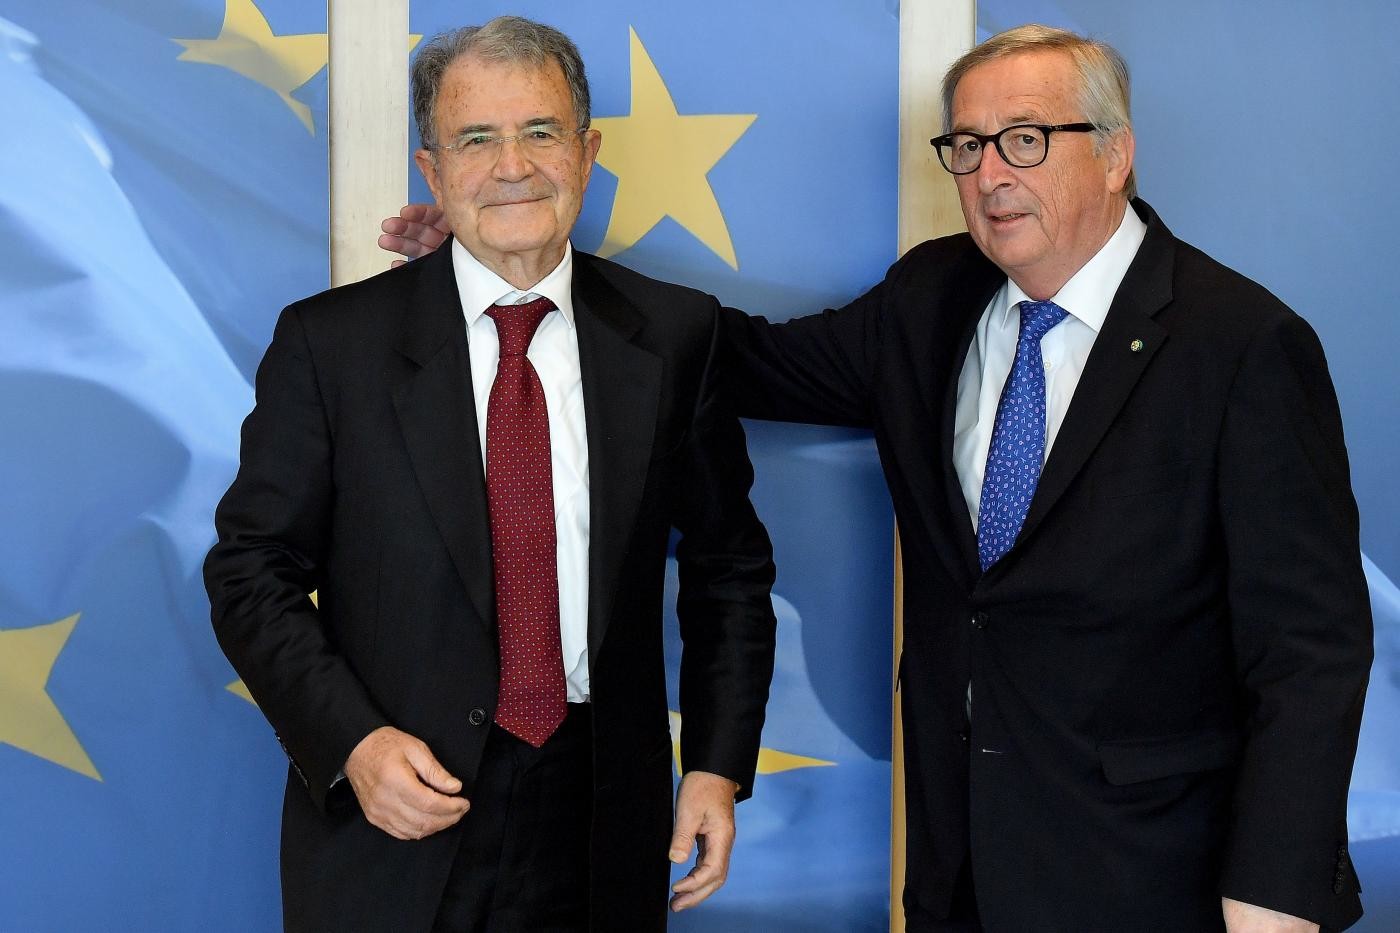 Prodi scuote la sinistra: “Né idee né leader”. Nei circoli Pd Zingaretti avanti, ma è caos